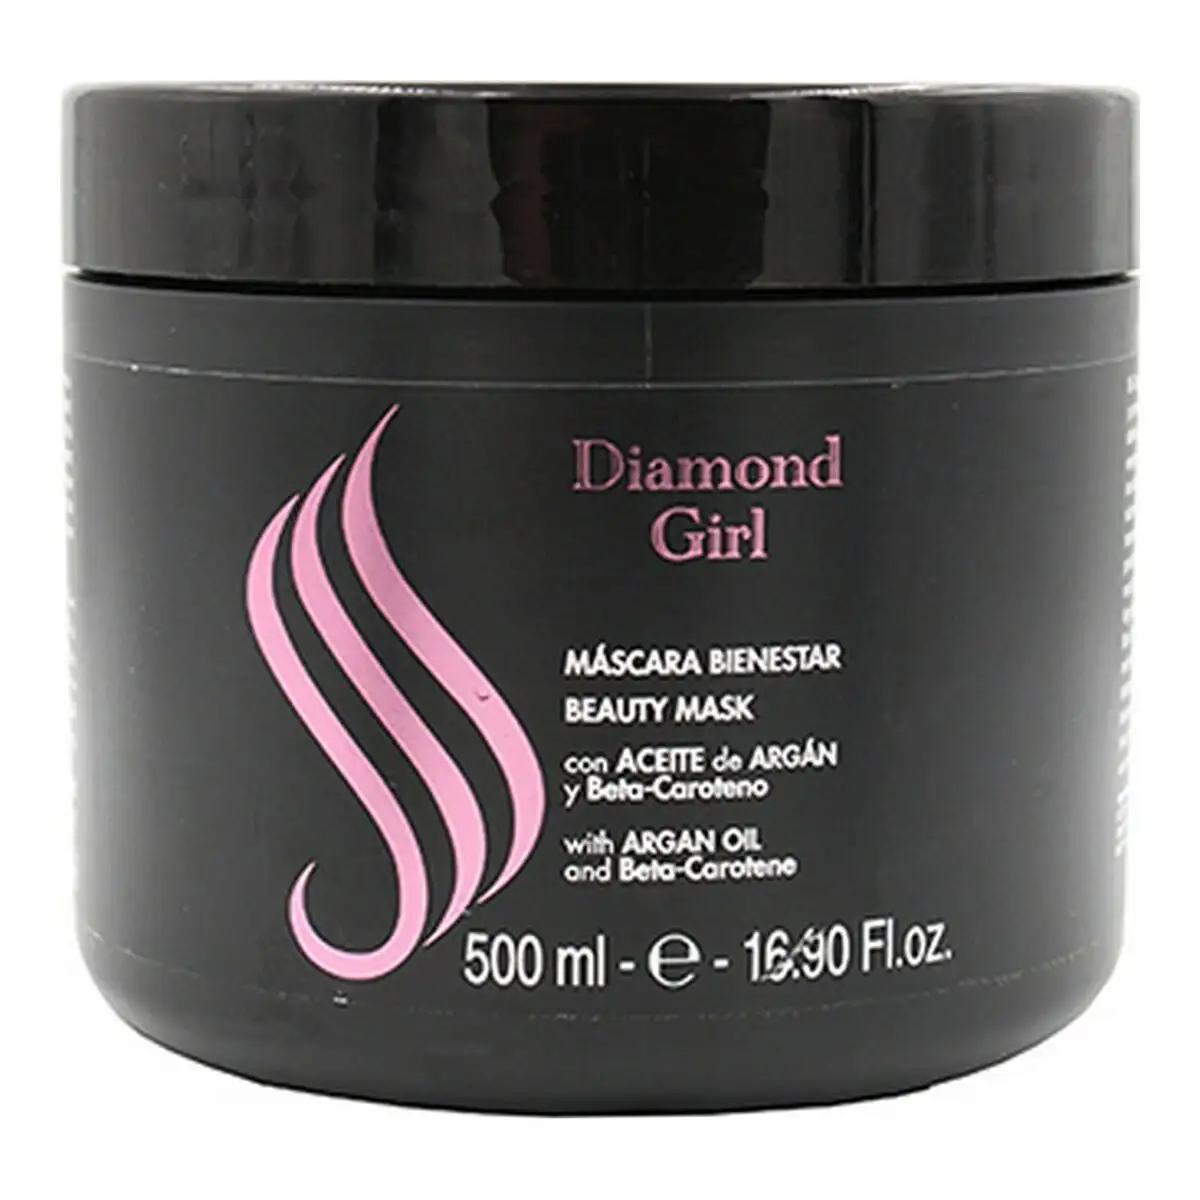 Masque pour cheveux sublime diamond girl argan 500 ml _5017. DIAYTAR SENEGAL - L'Art de Vivre le Shopping Authentique. Découvrez notre boutique en ligne et trouvez des produits qui célèbrent la culture et l'héritage du Sénégal.